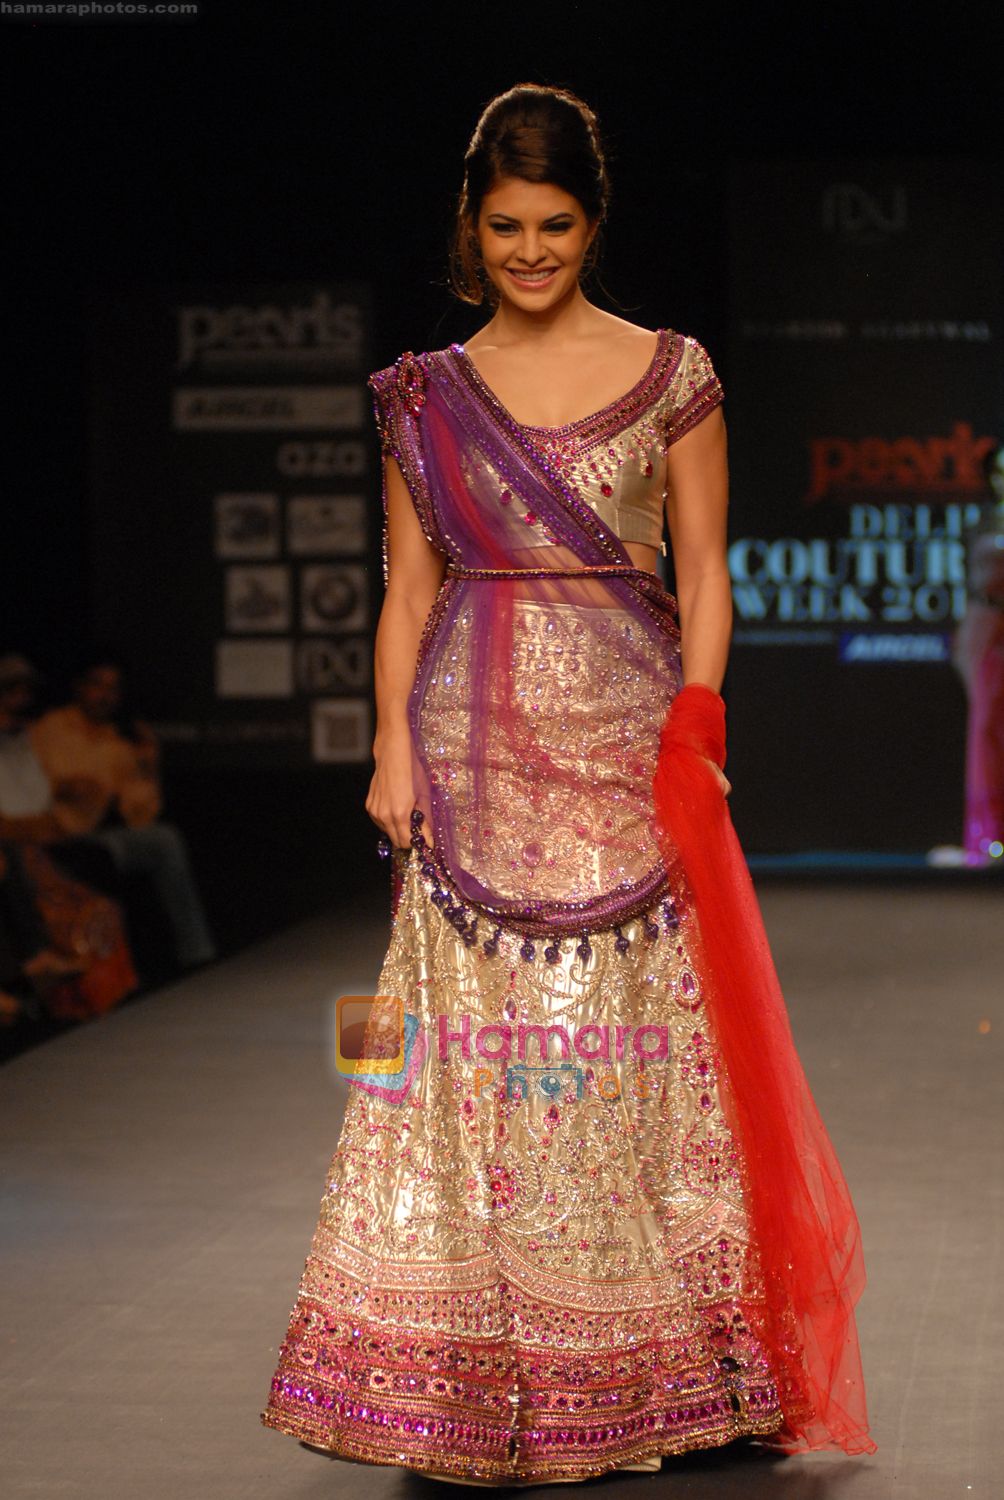 Designer Raakesh Agarvwal Couture presents Premi�re Classe 5